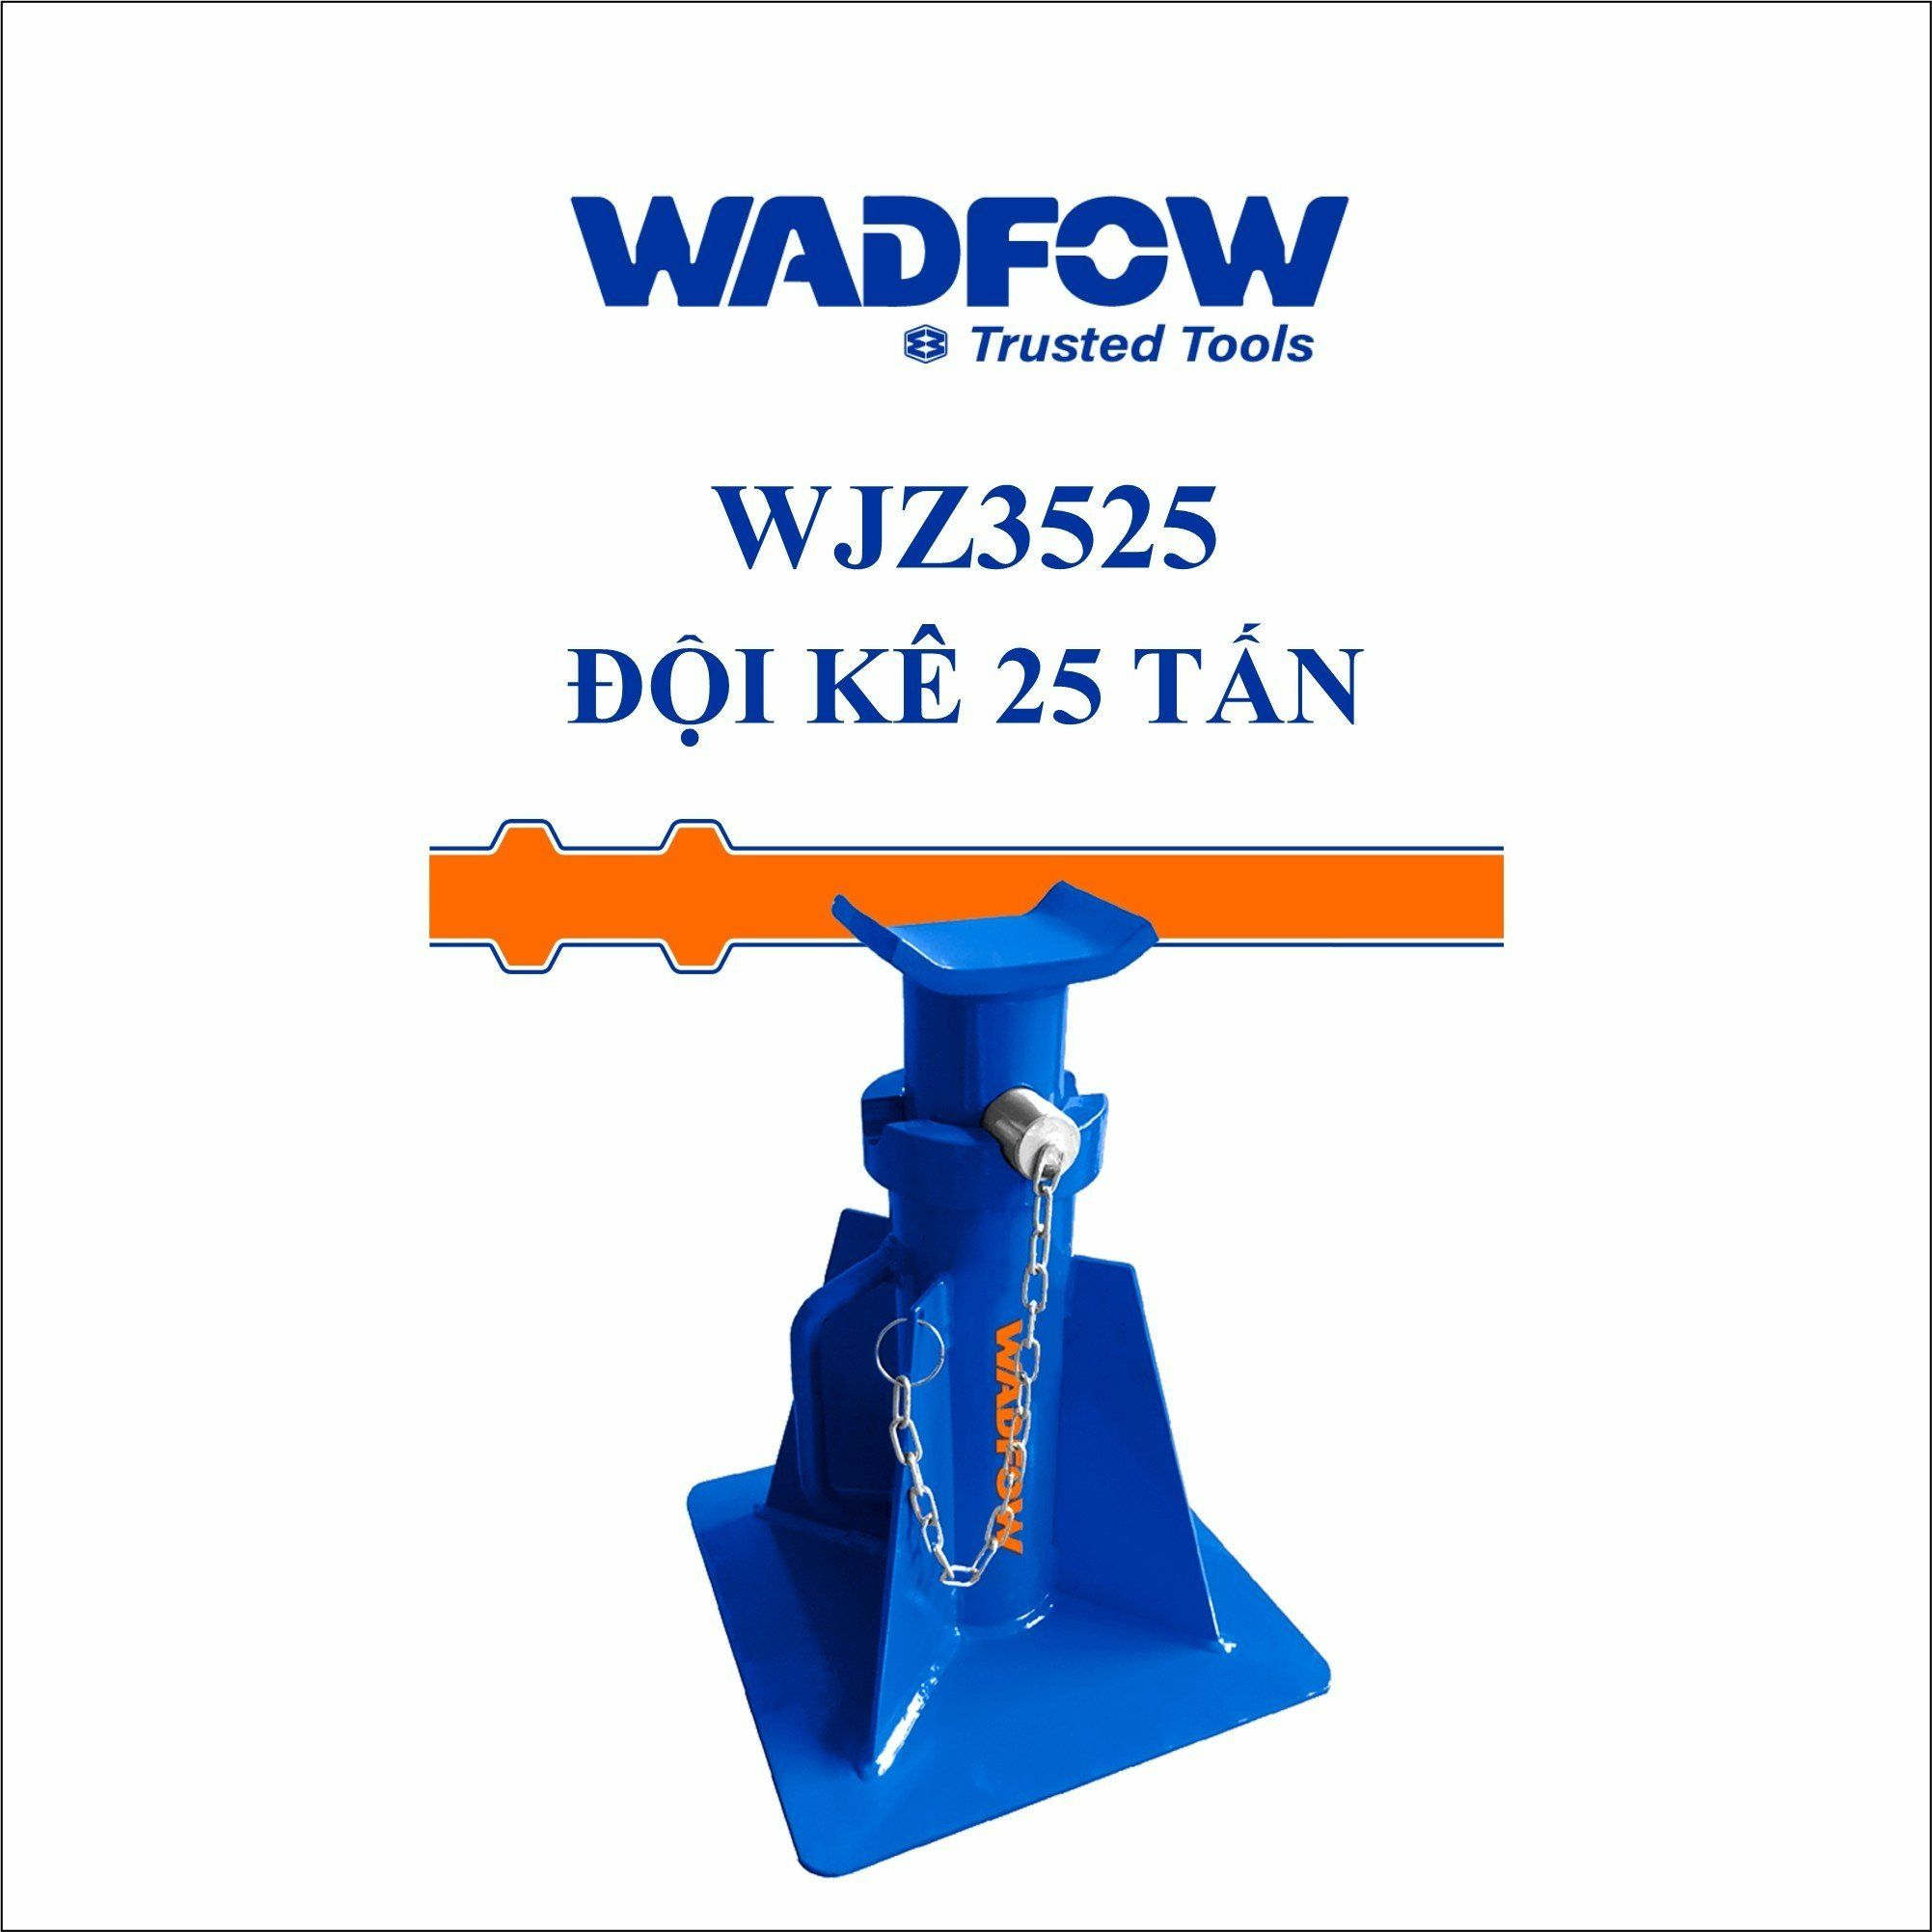  Đội kê 25 tấn WADFOW WJZ3525 